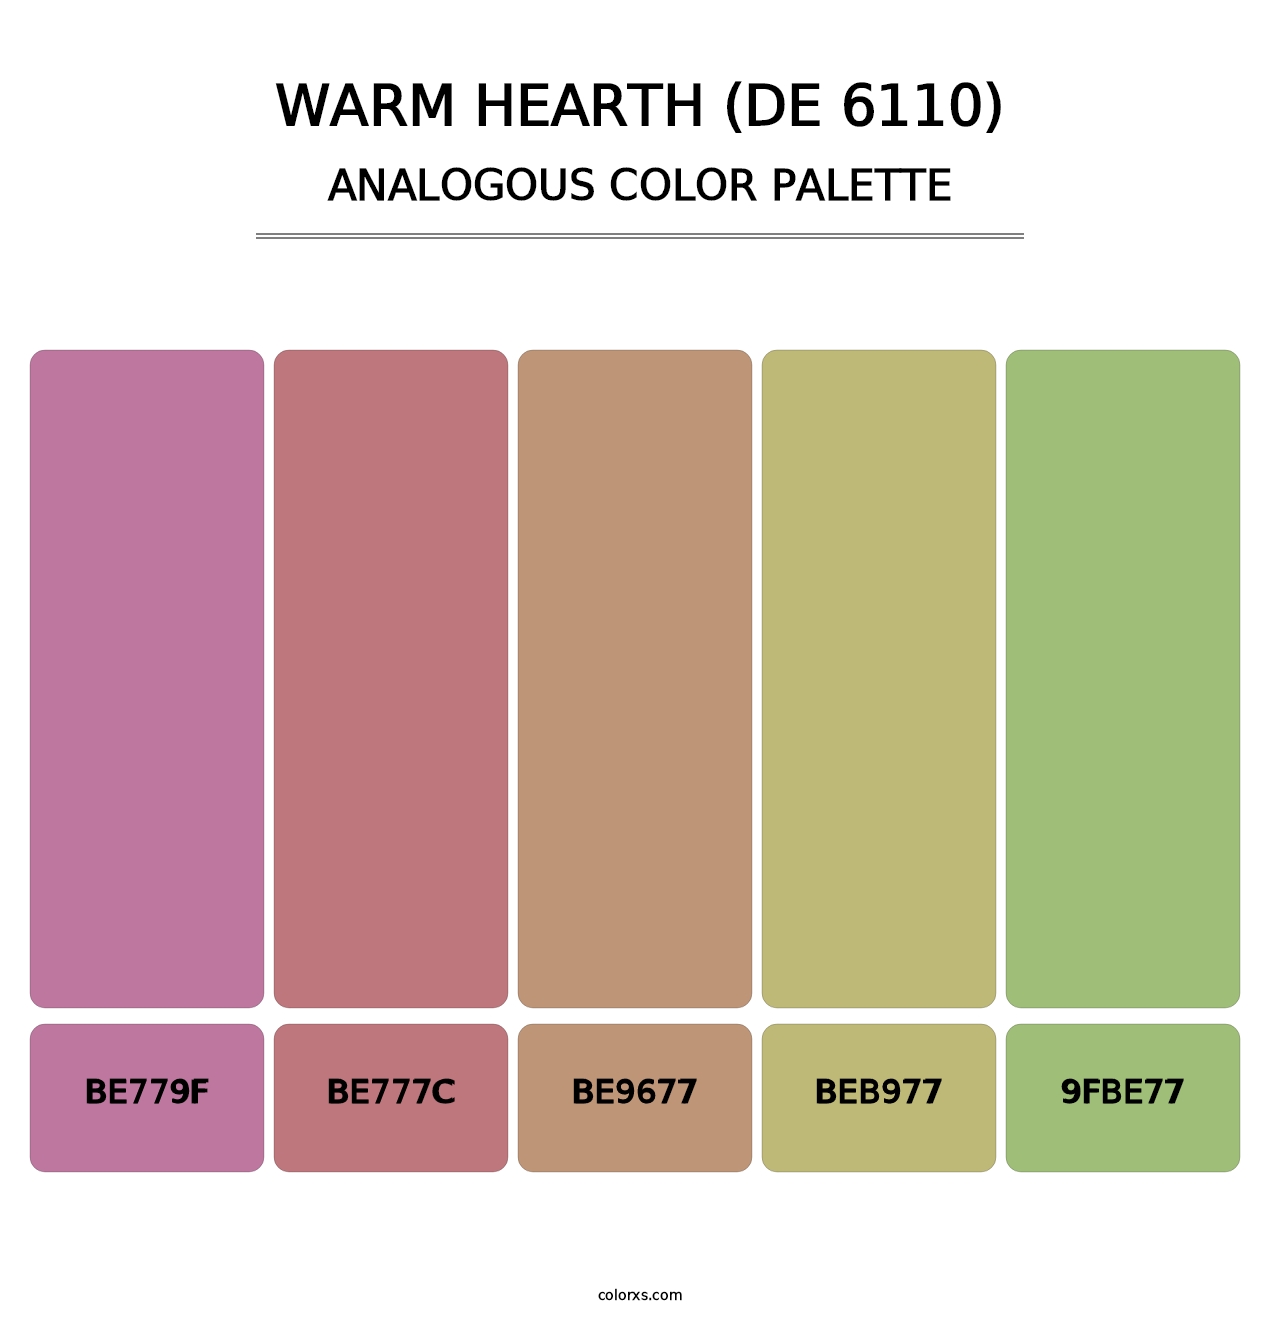 Warm Hearth (DE 6110) - Analogous Color Palette